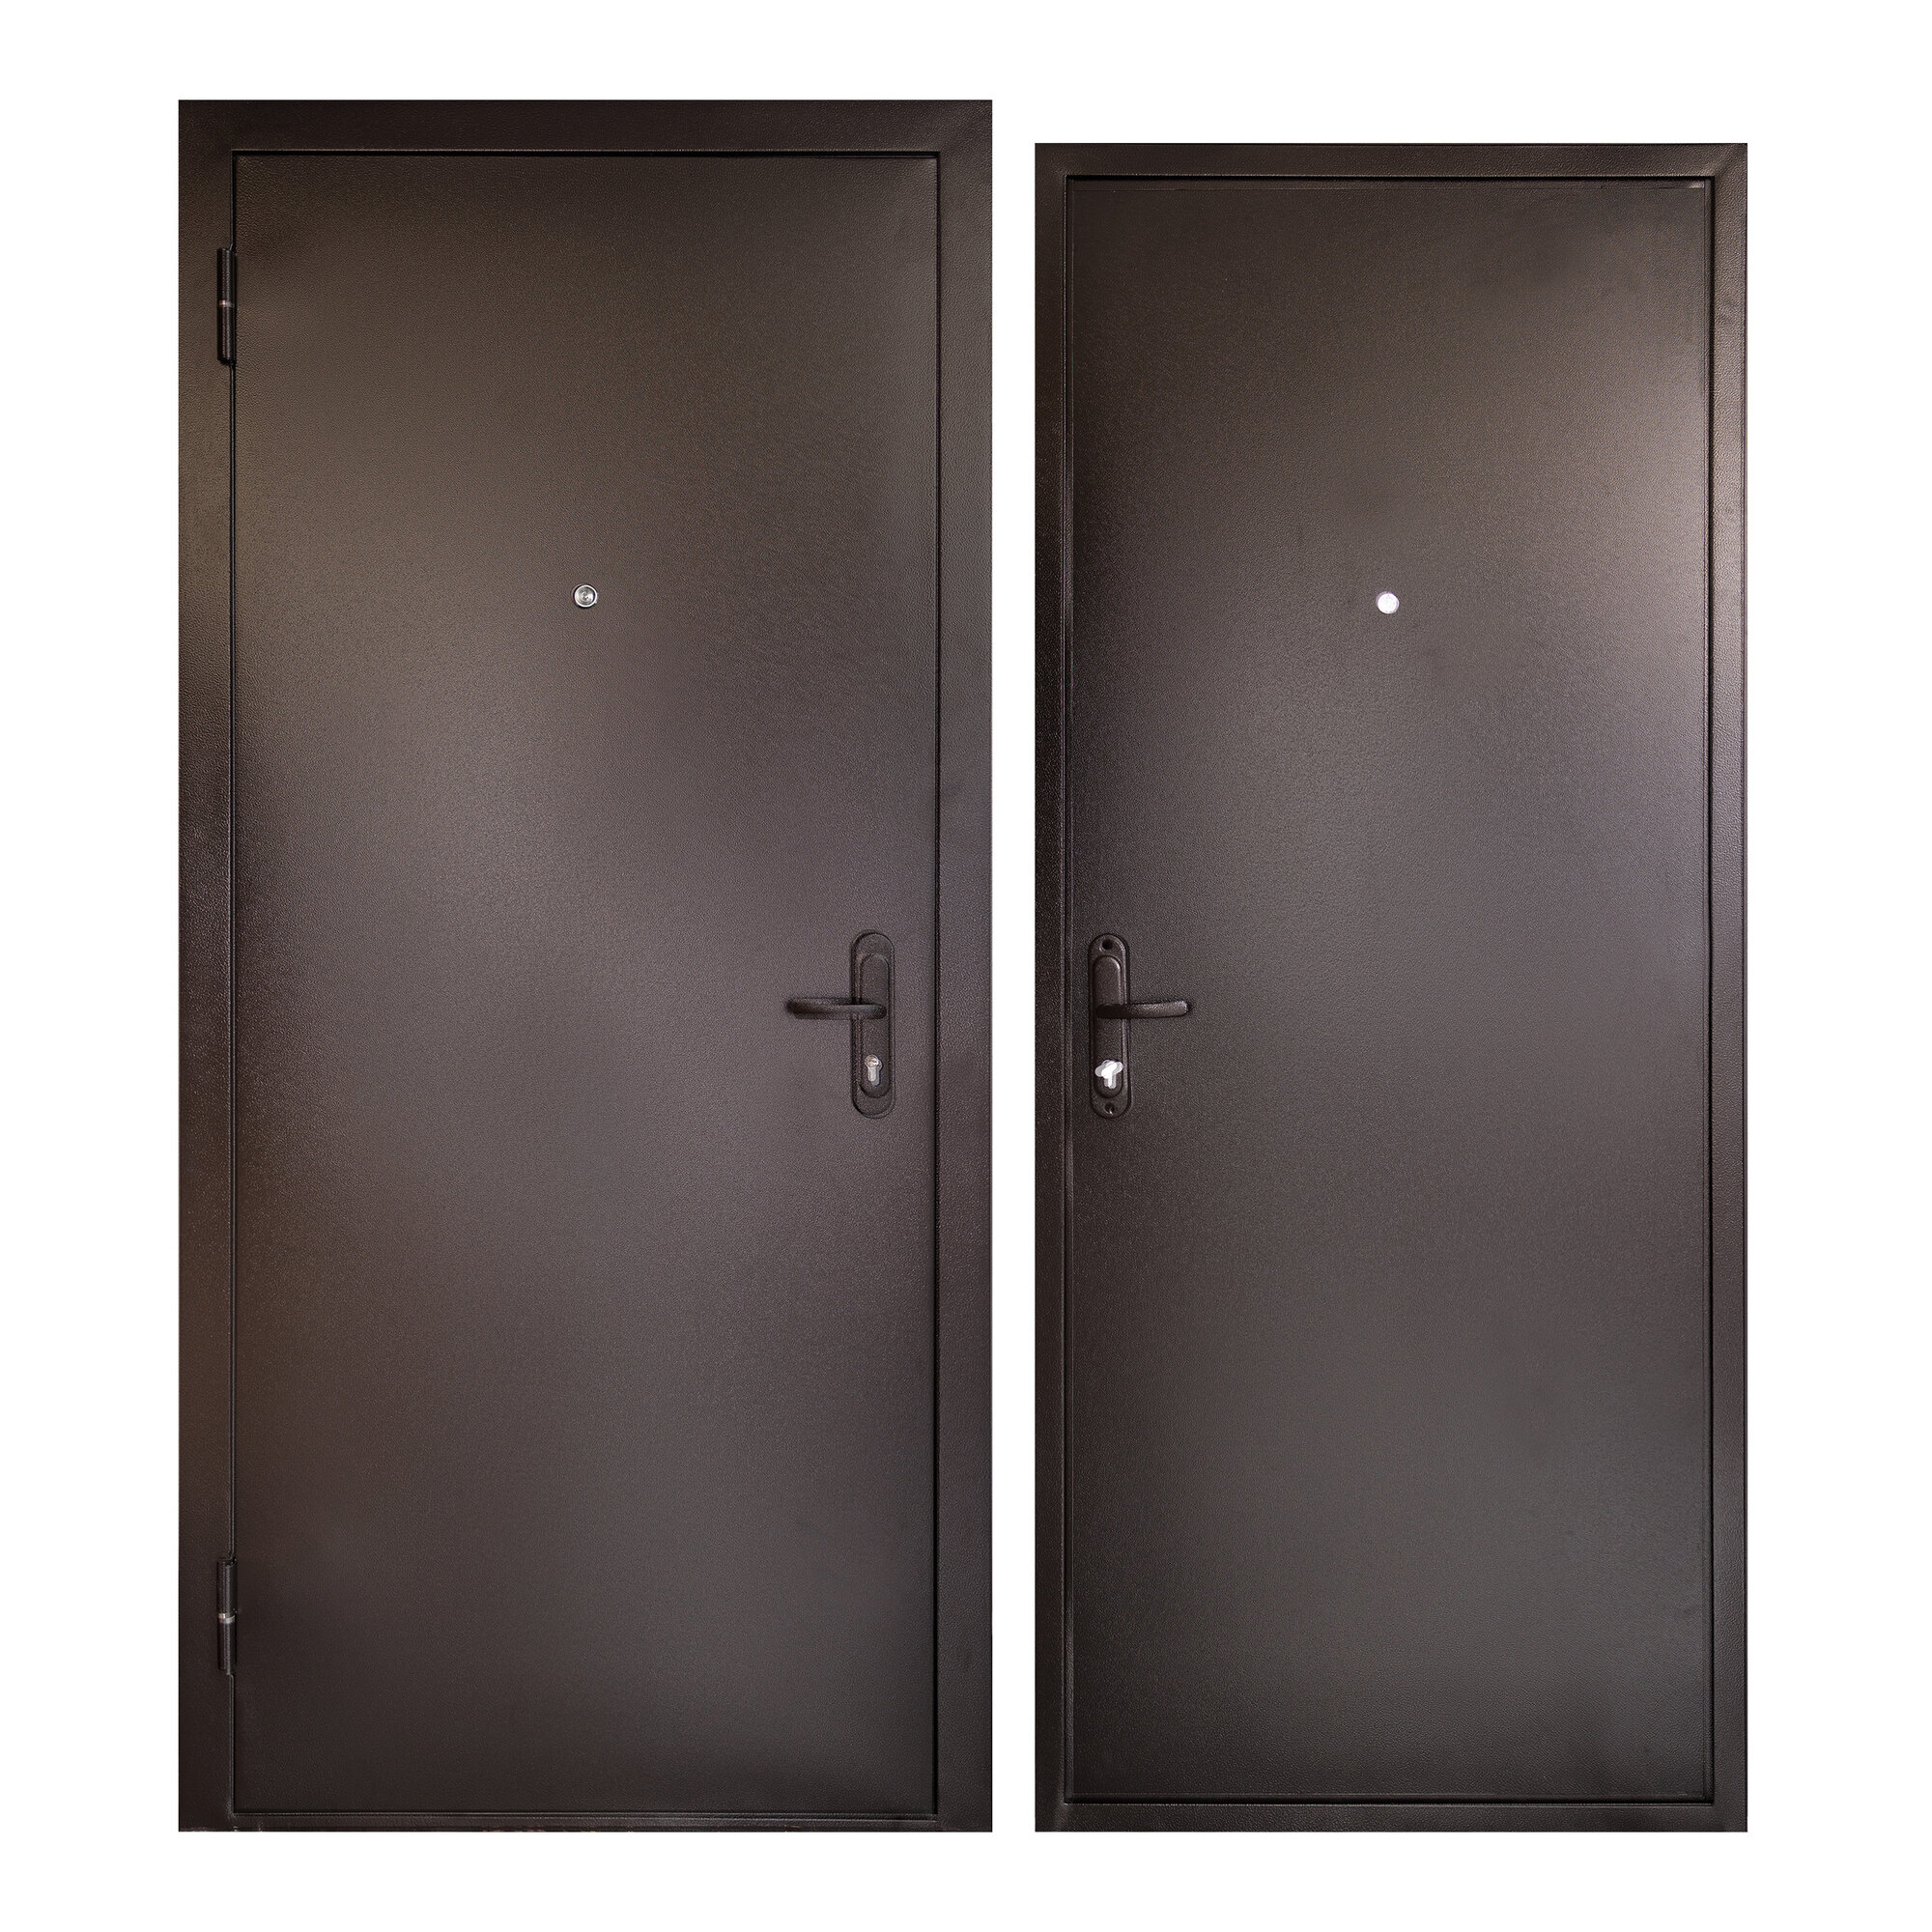 Дверь входная для квартиры Unicorn металлическая Terminal 960х2050, левая, антивандальное покрытие, уплотнитель, цилиндровый замок, коричневый